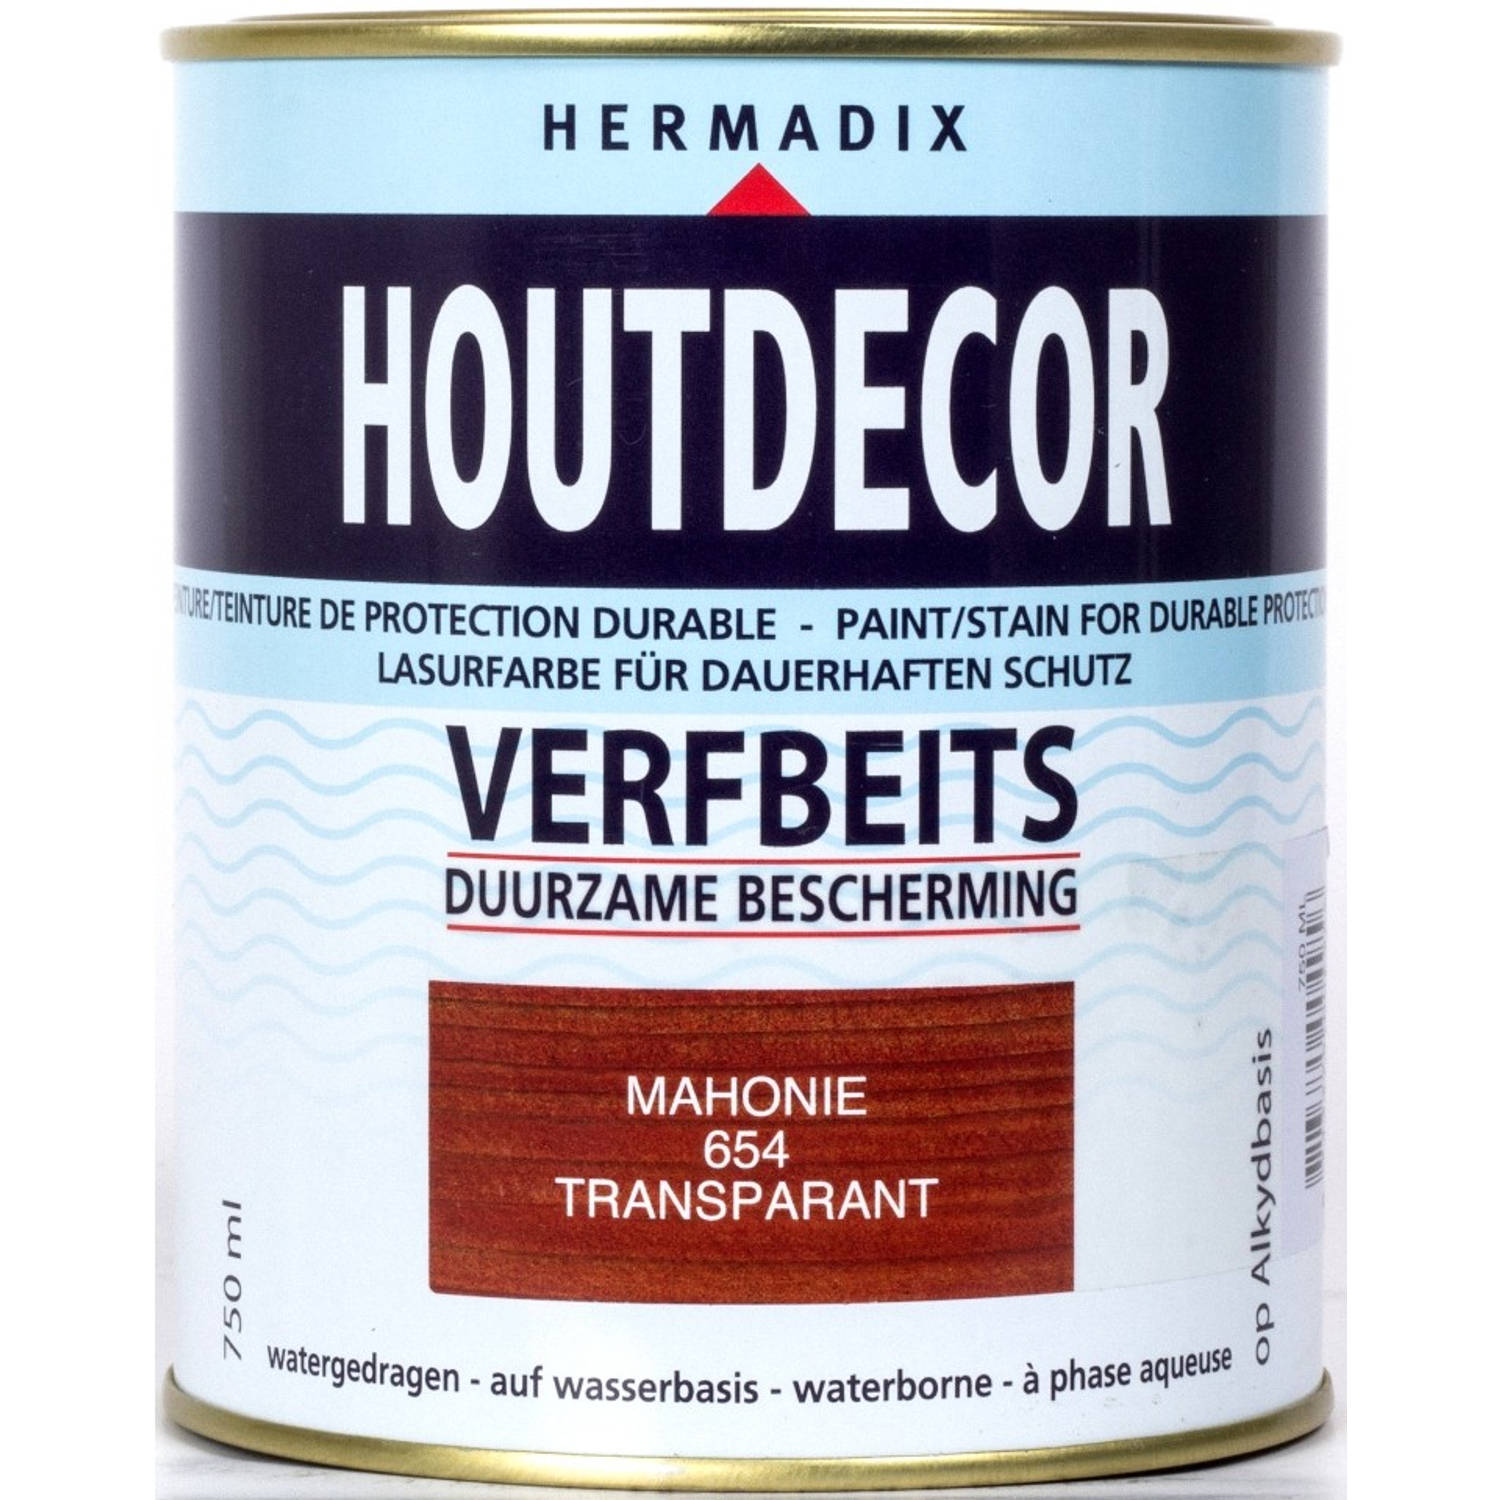 Hermadix houtdecor verfbeits mahonie 654 750 ml